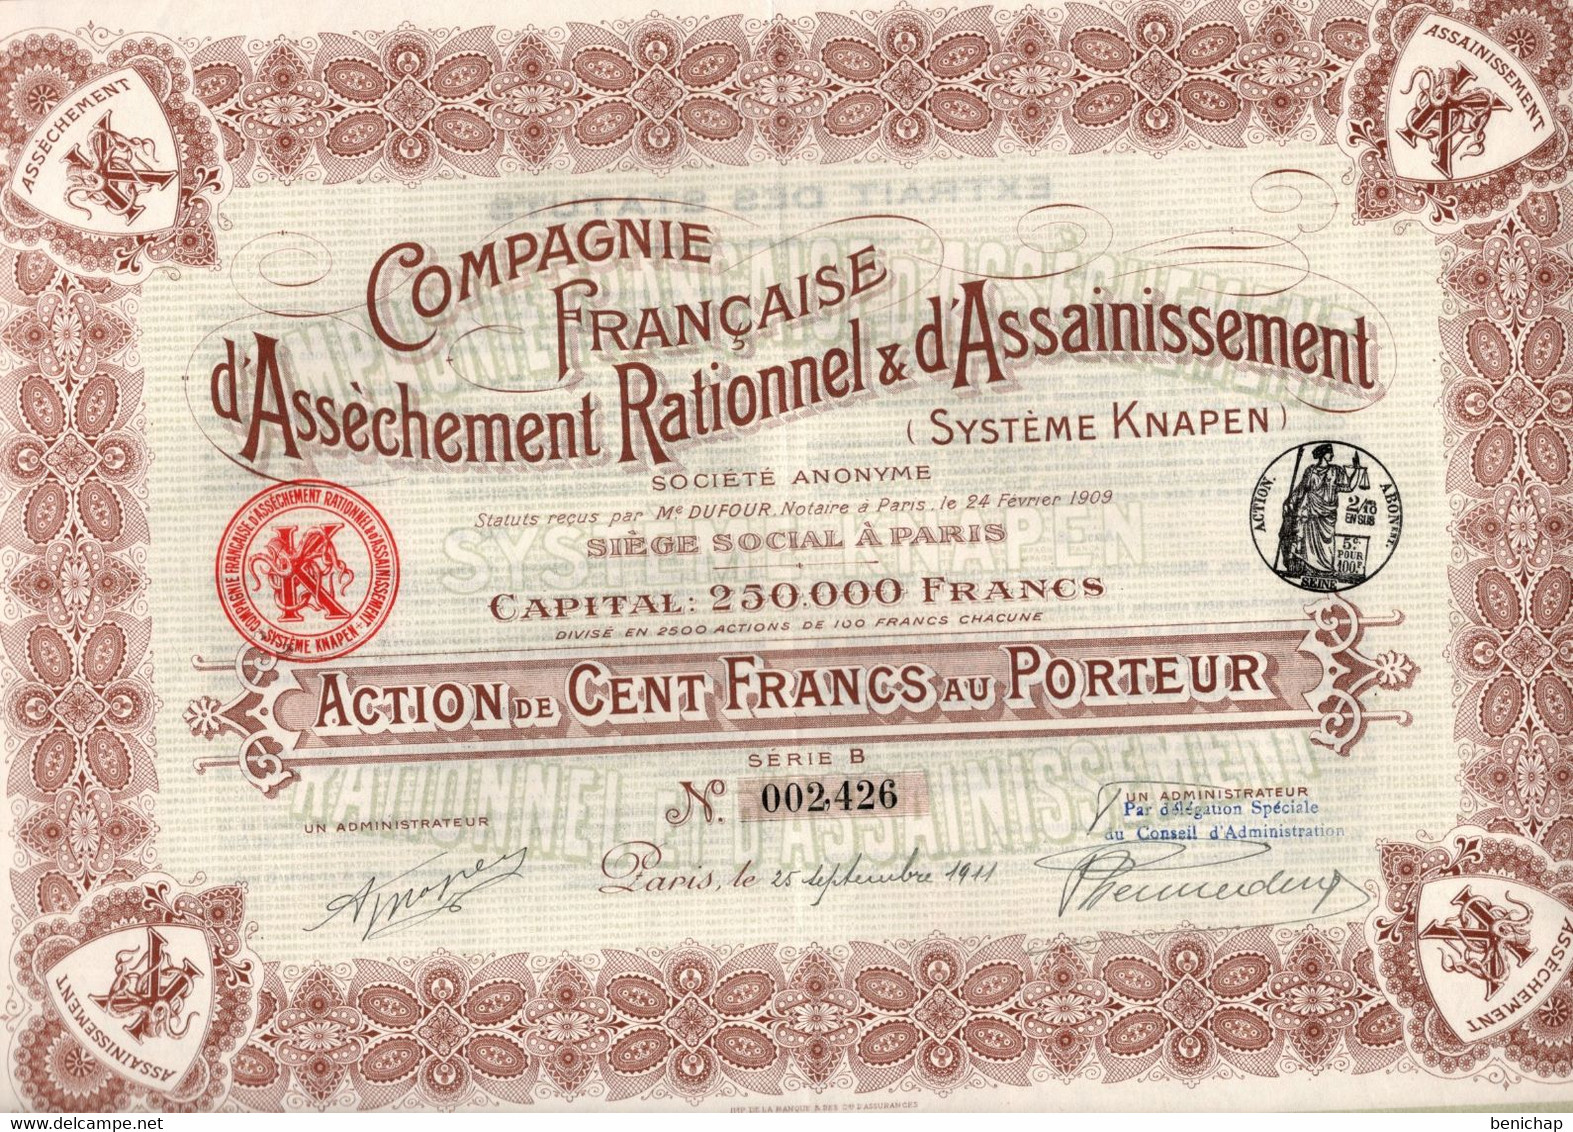 Action De 100 Frcs Au Porteur - Compagnie Française D'Assèchement Rationnel & D'Assainissement Knapen - Paris 1911 - Acqua